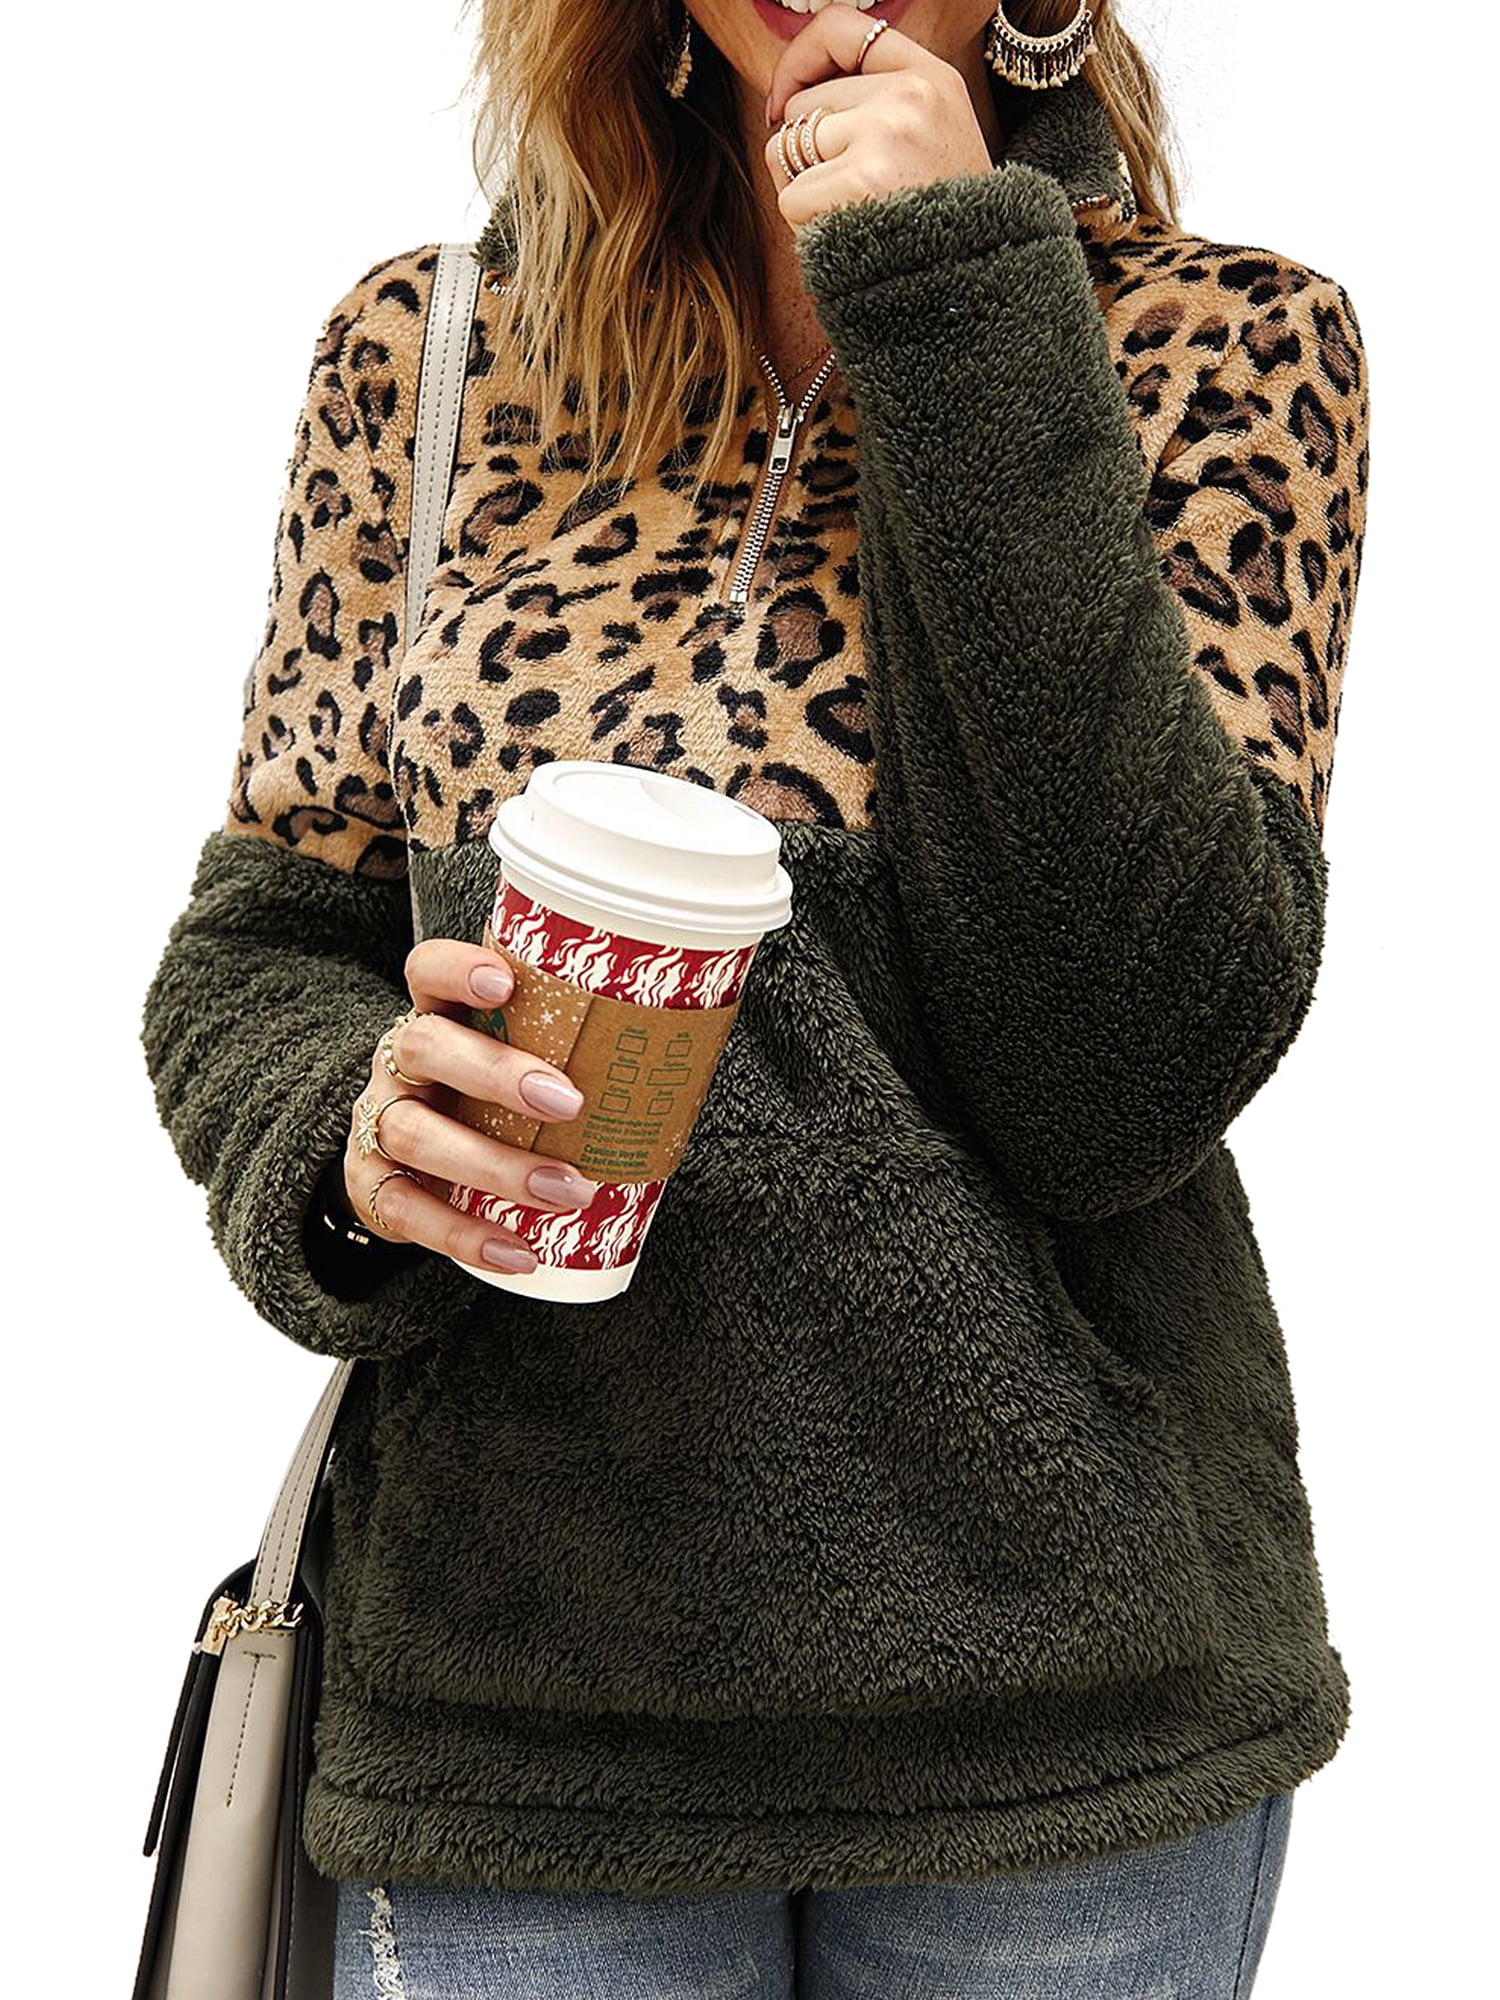 FIRENGOLI Womens Fleece Sweatshirt Fashion Leopard Print 1/4 Zipper Fuzzy Sherpa Pullover with Pocket 